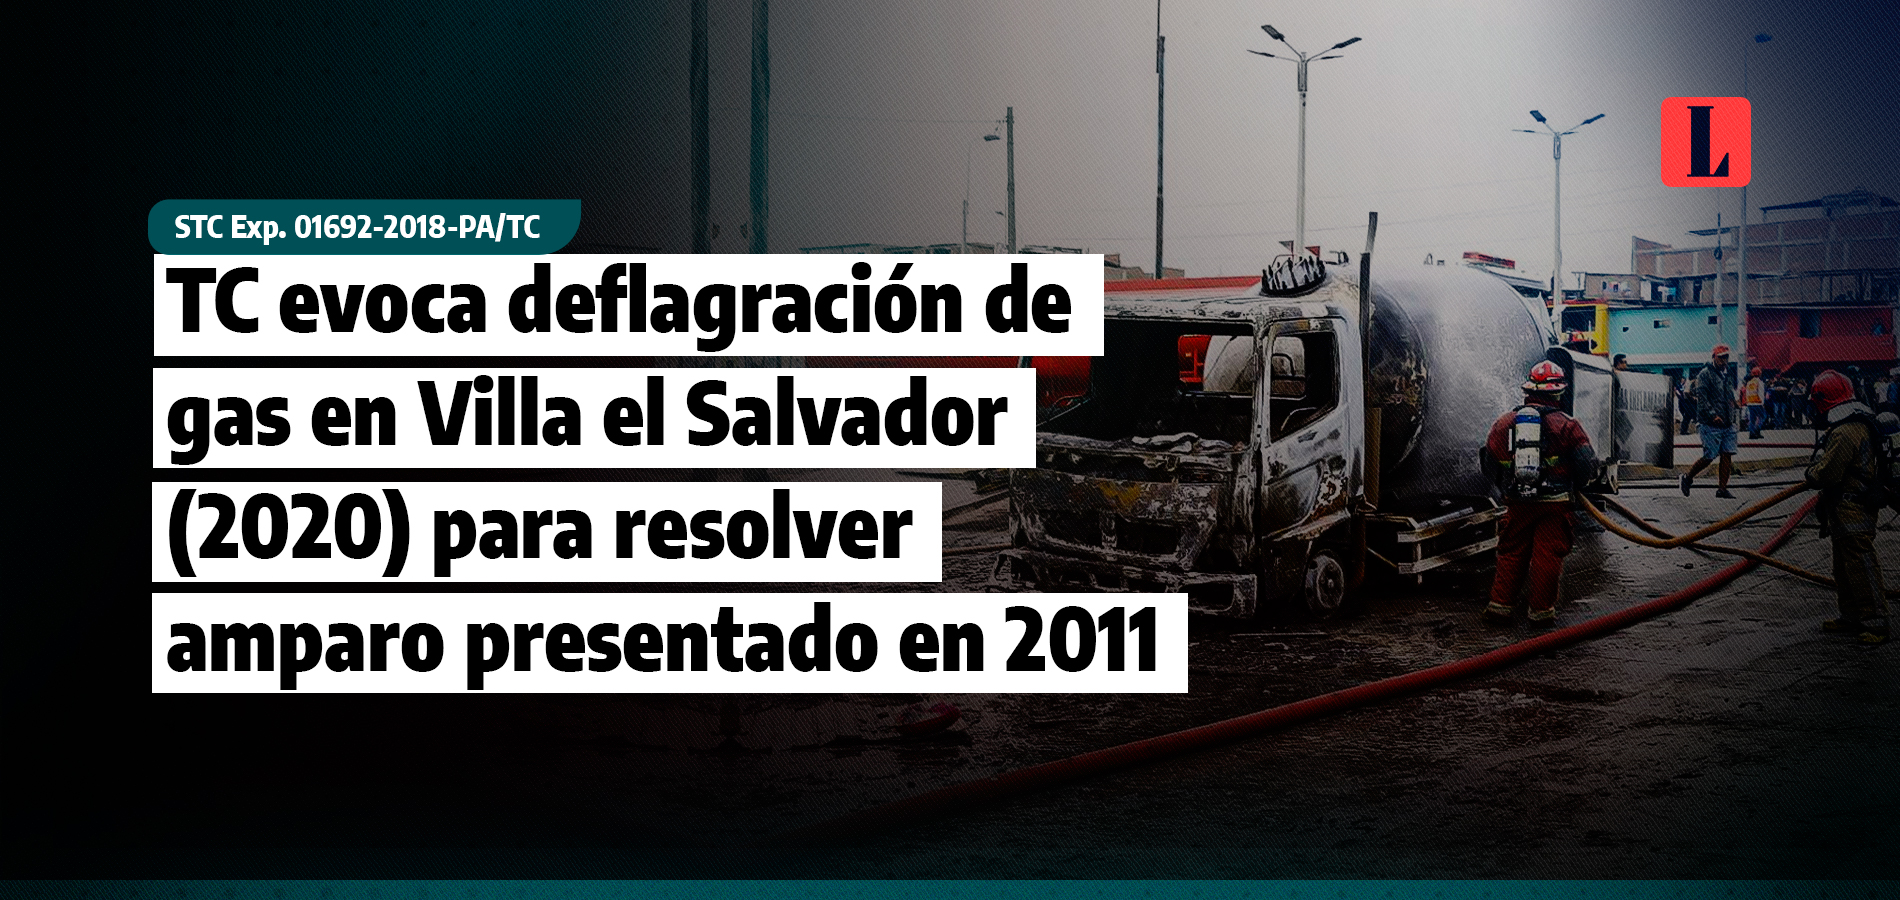 TC evoca deflagracion de gas en Villa el Salvador 2020 para resolver amparo presentado en 2011 laley.pe